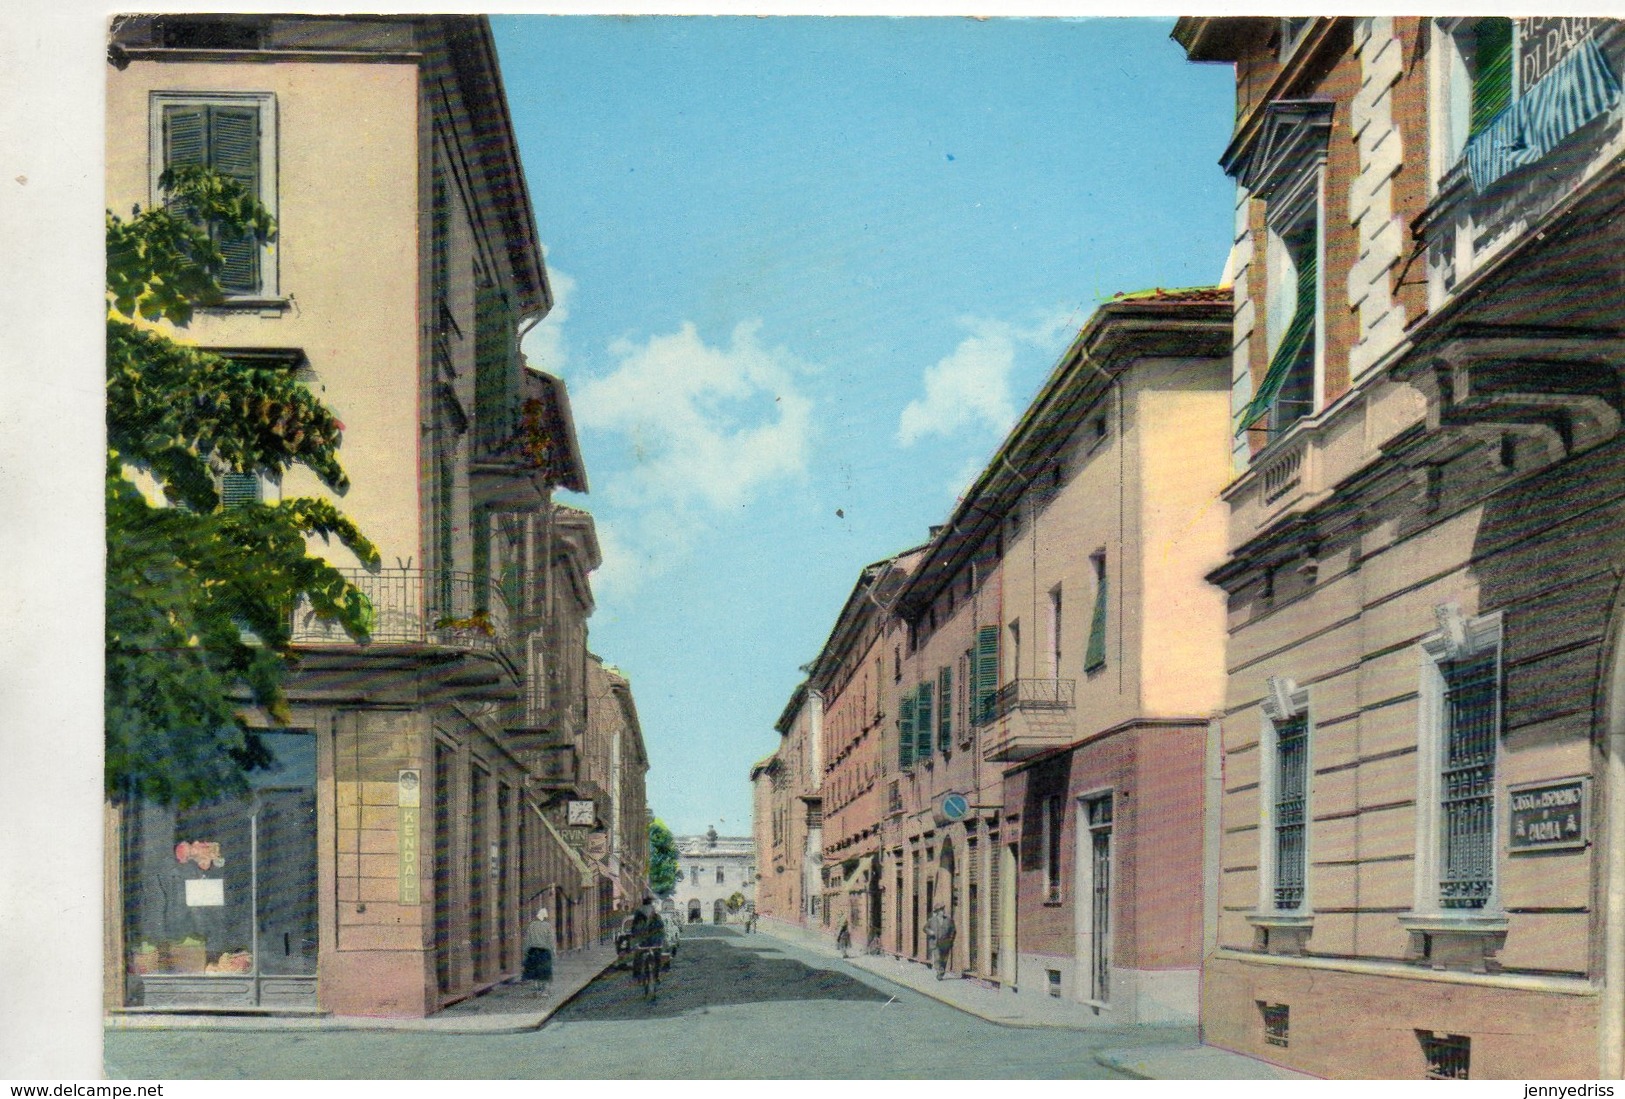 FIDENZA - Parma